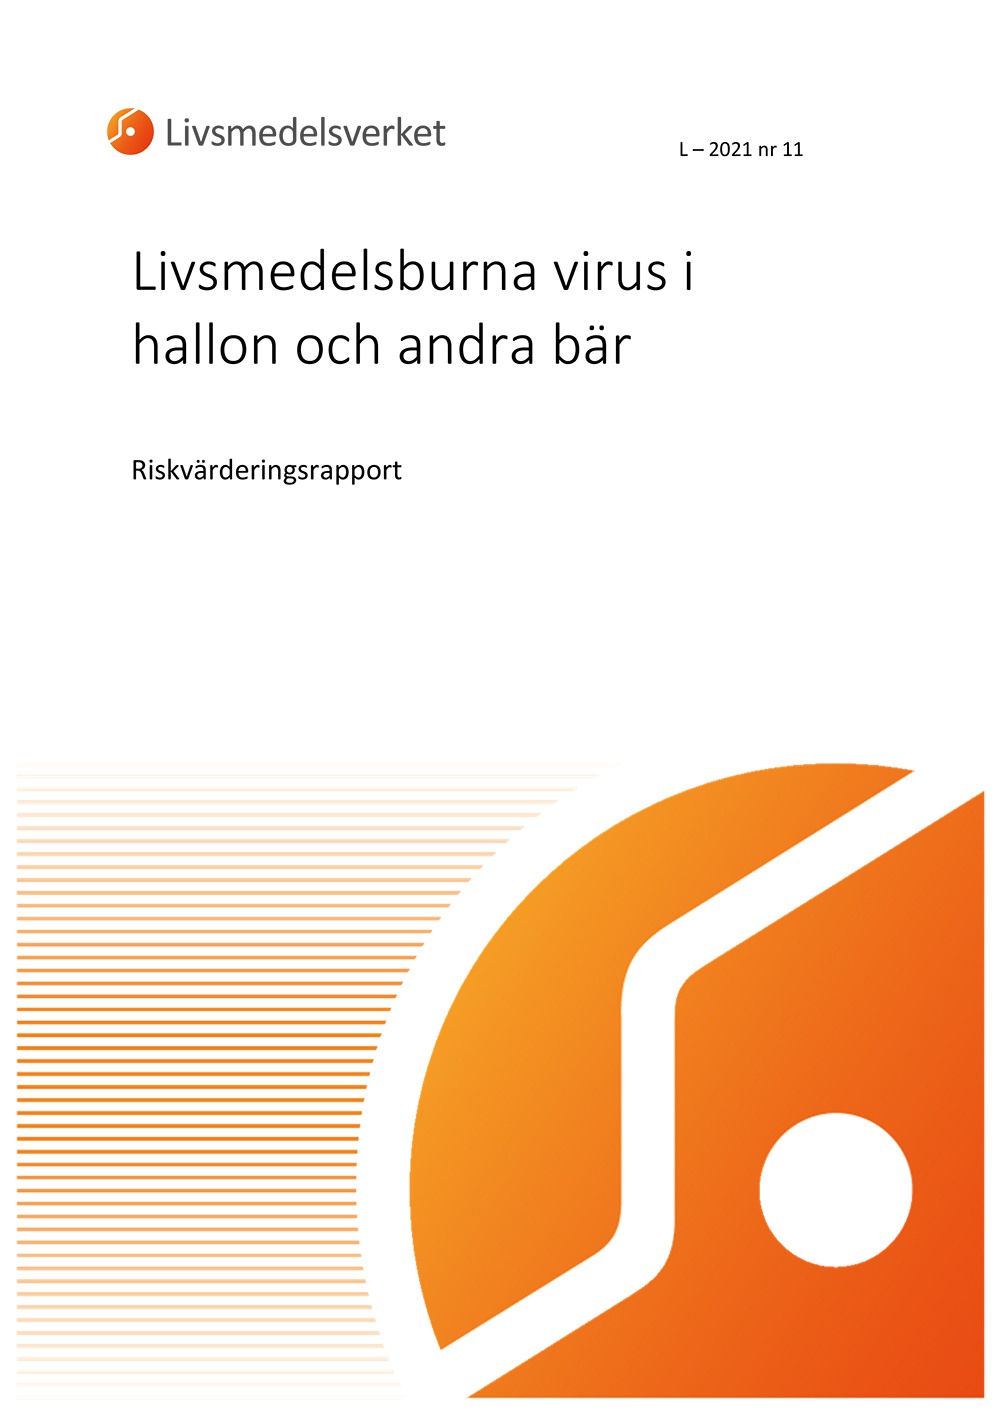 Framsidan av rapport L 2021 nr 11 - Livsmedelsburna virus i hallon och andra bär, Riskvärdering.